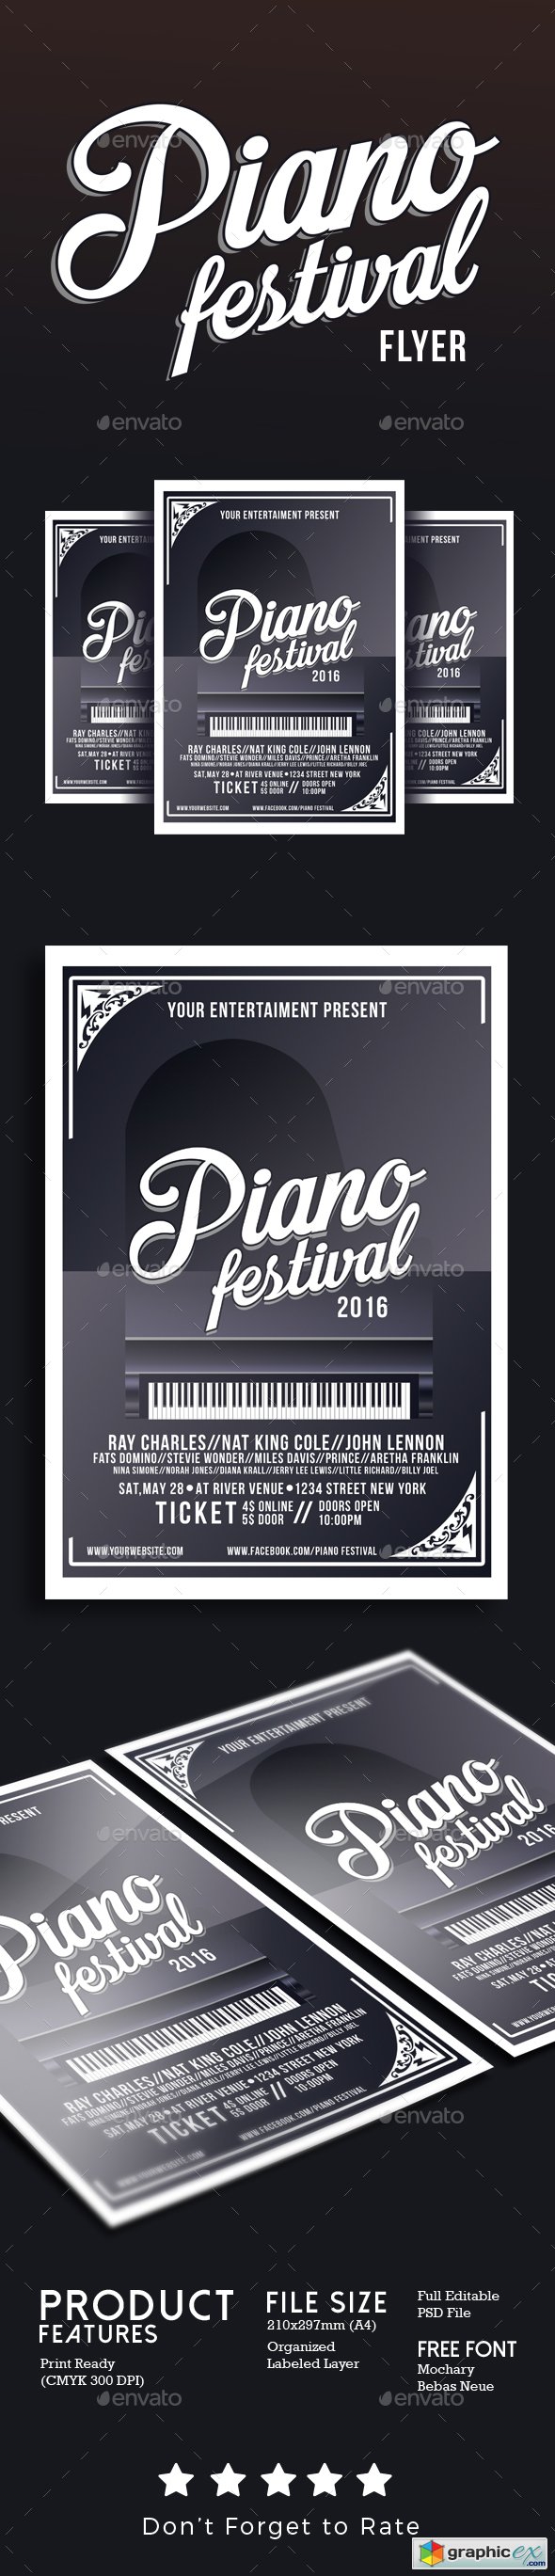 Piano Festival Flyer Template